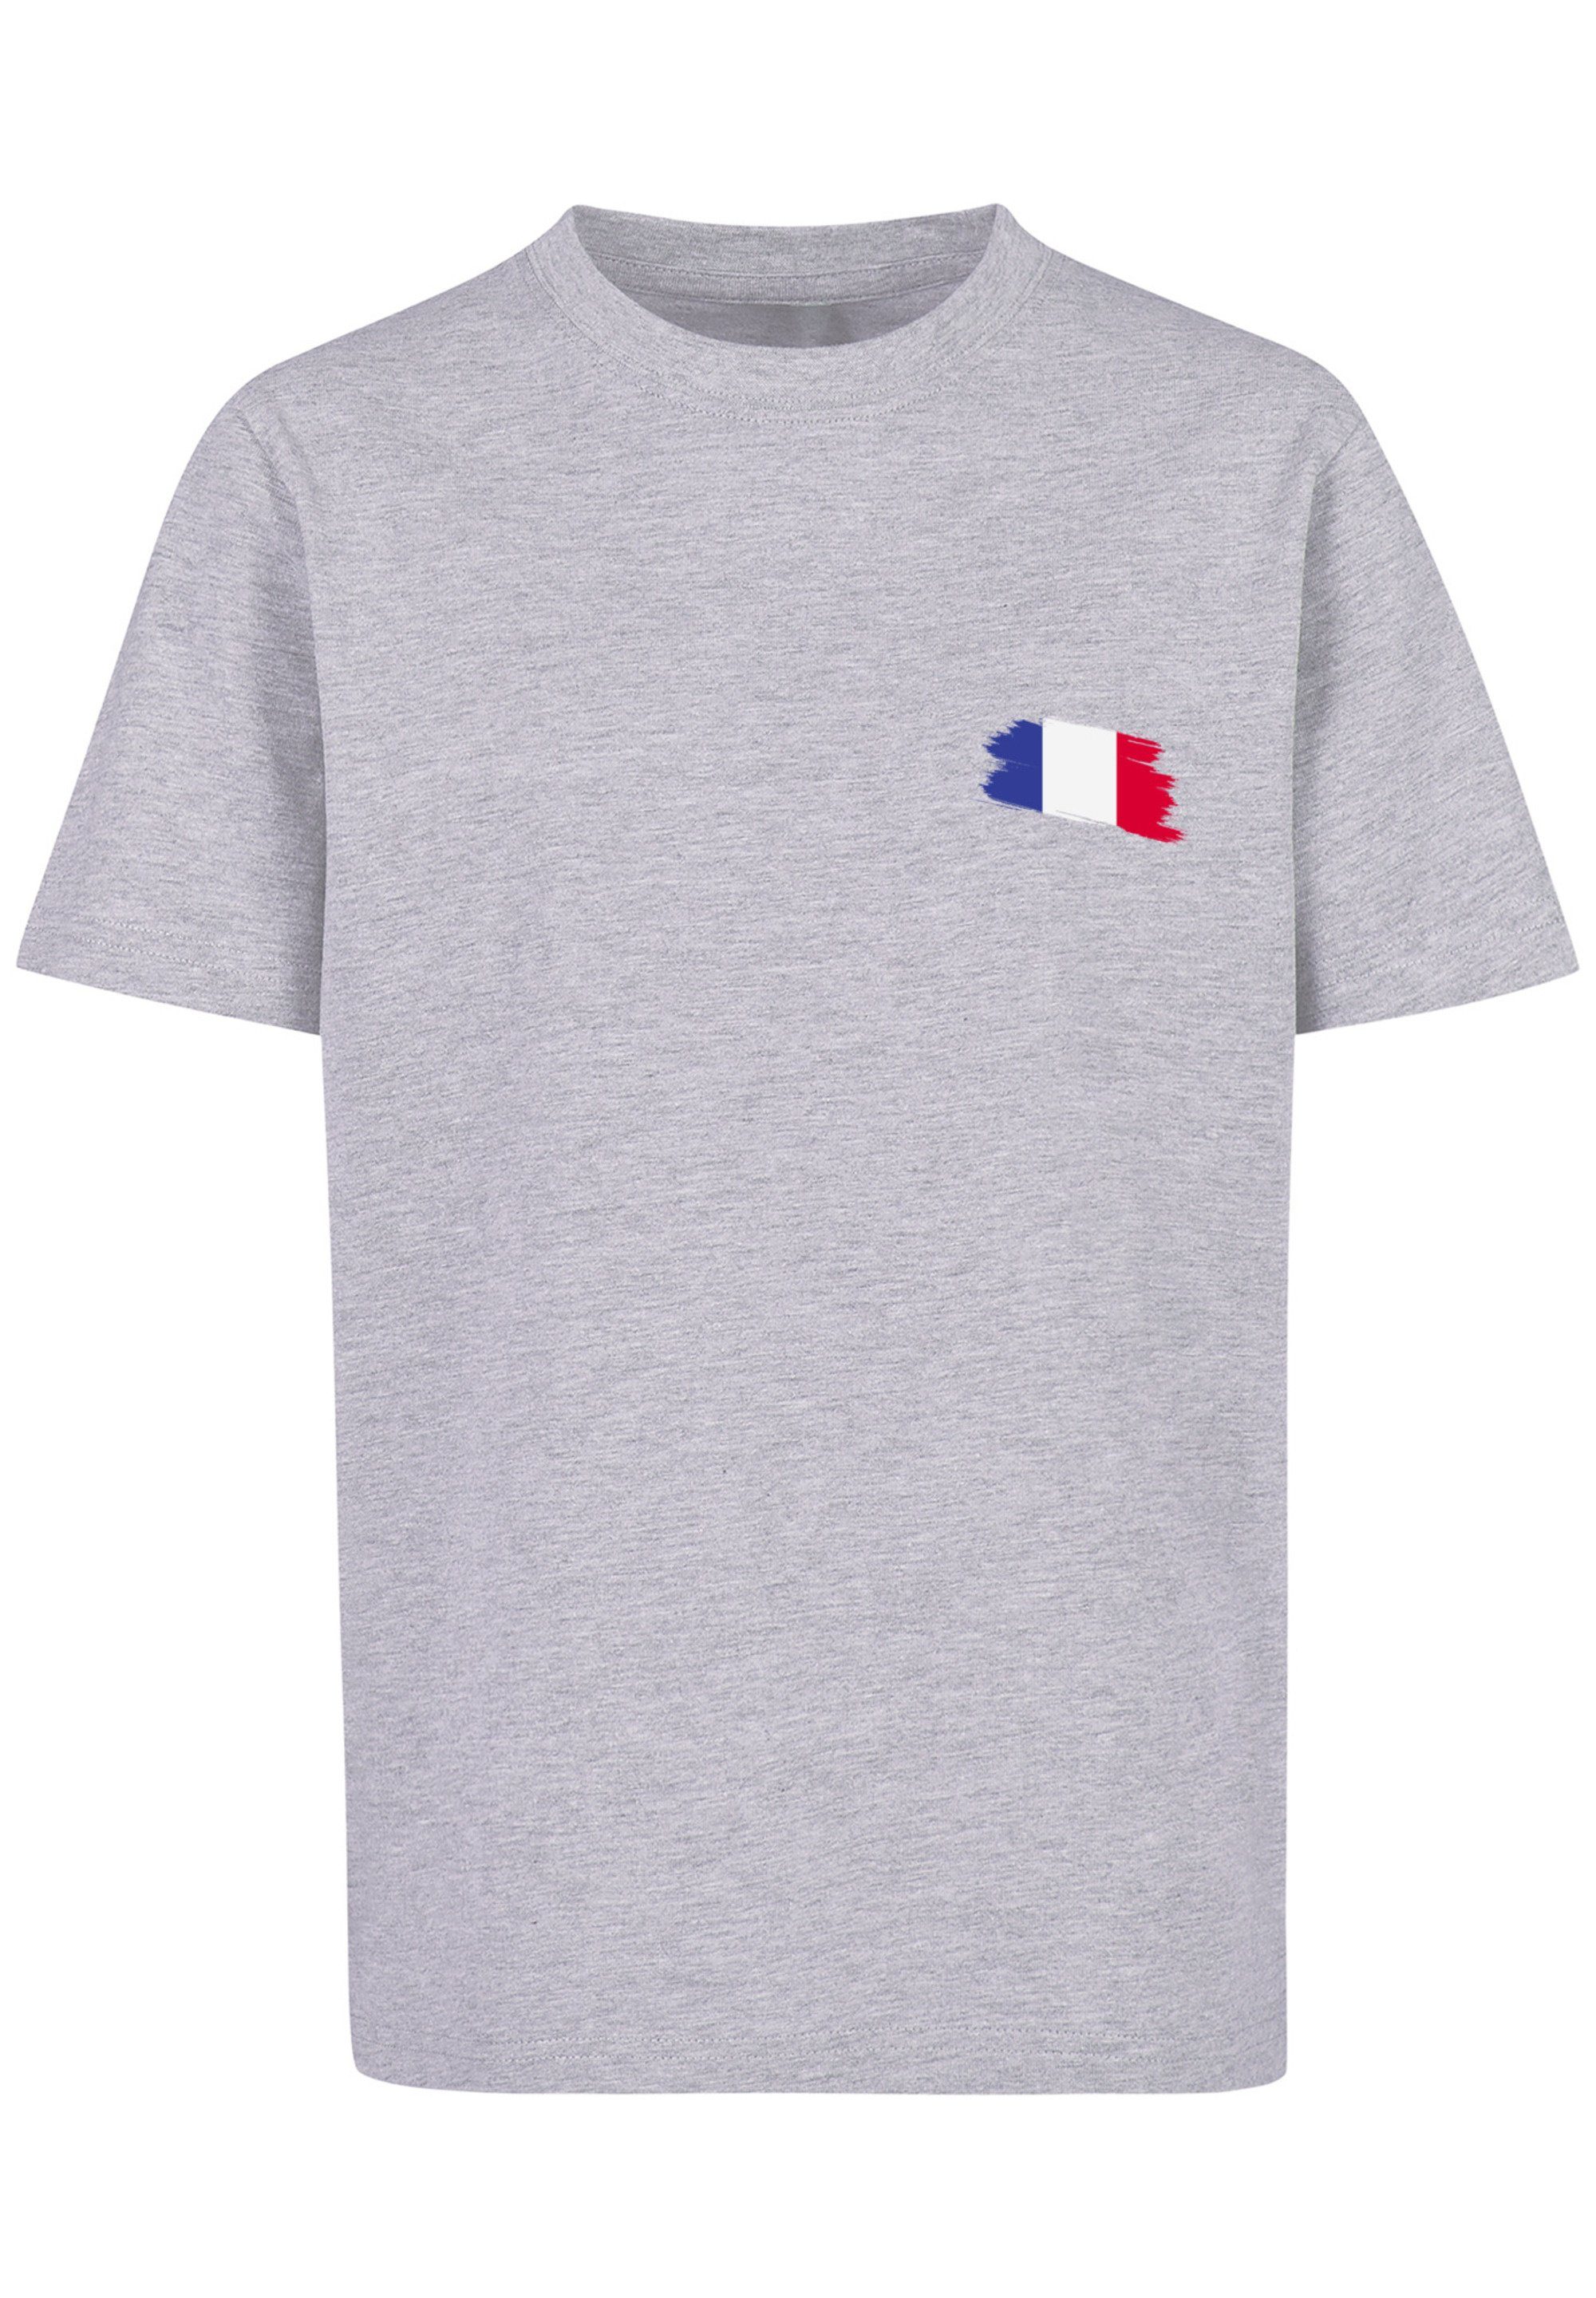 T-Shirt France Flagge Fahne F4NT4STIC Print grey heather Frankreich